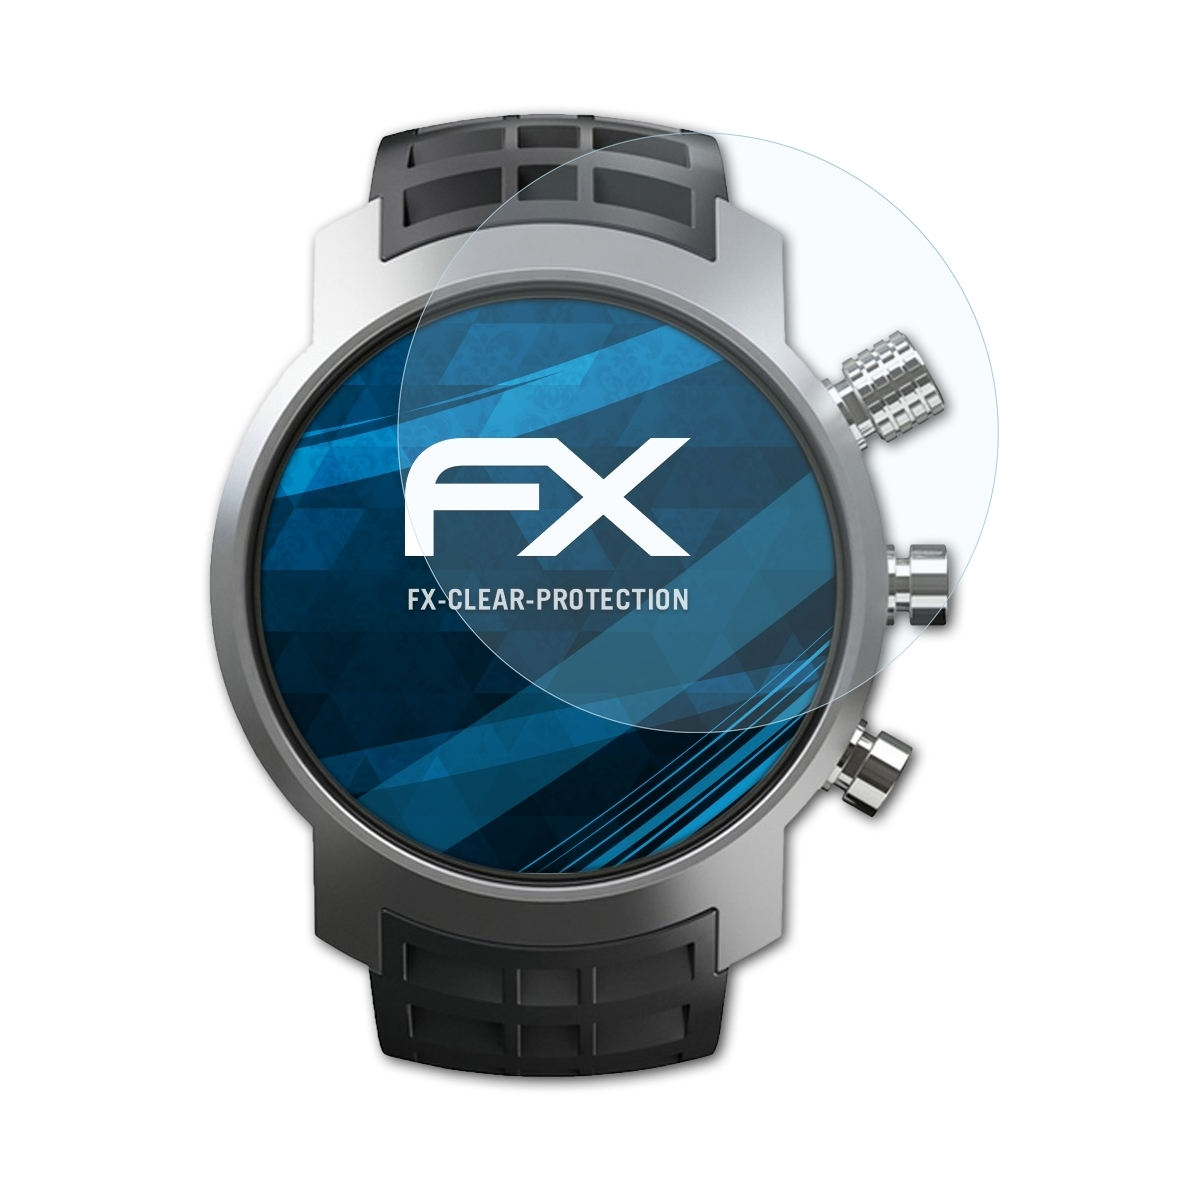 ATFOLIX 3x FX-Clear Displayschutz(für Elementum) Suunto